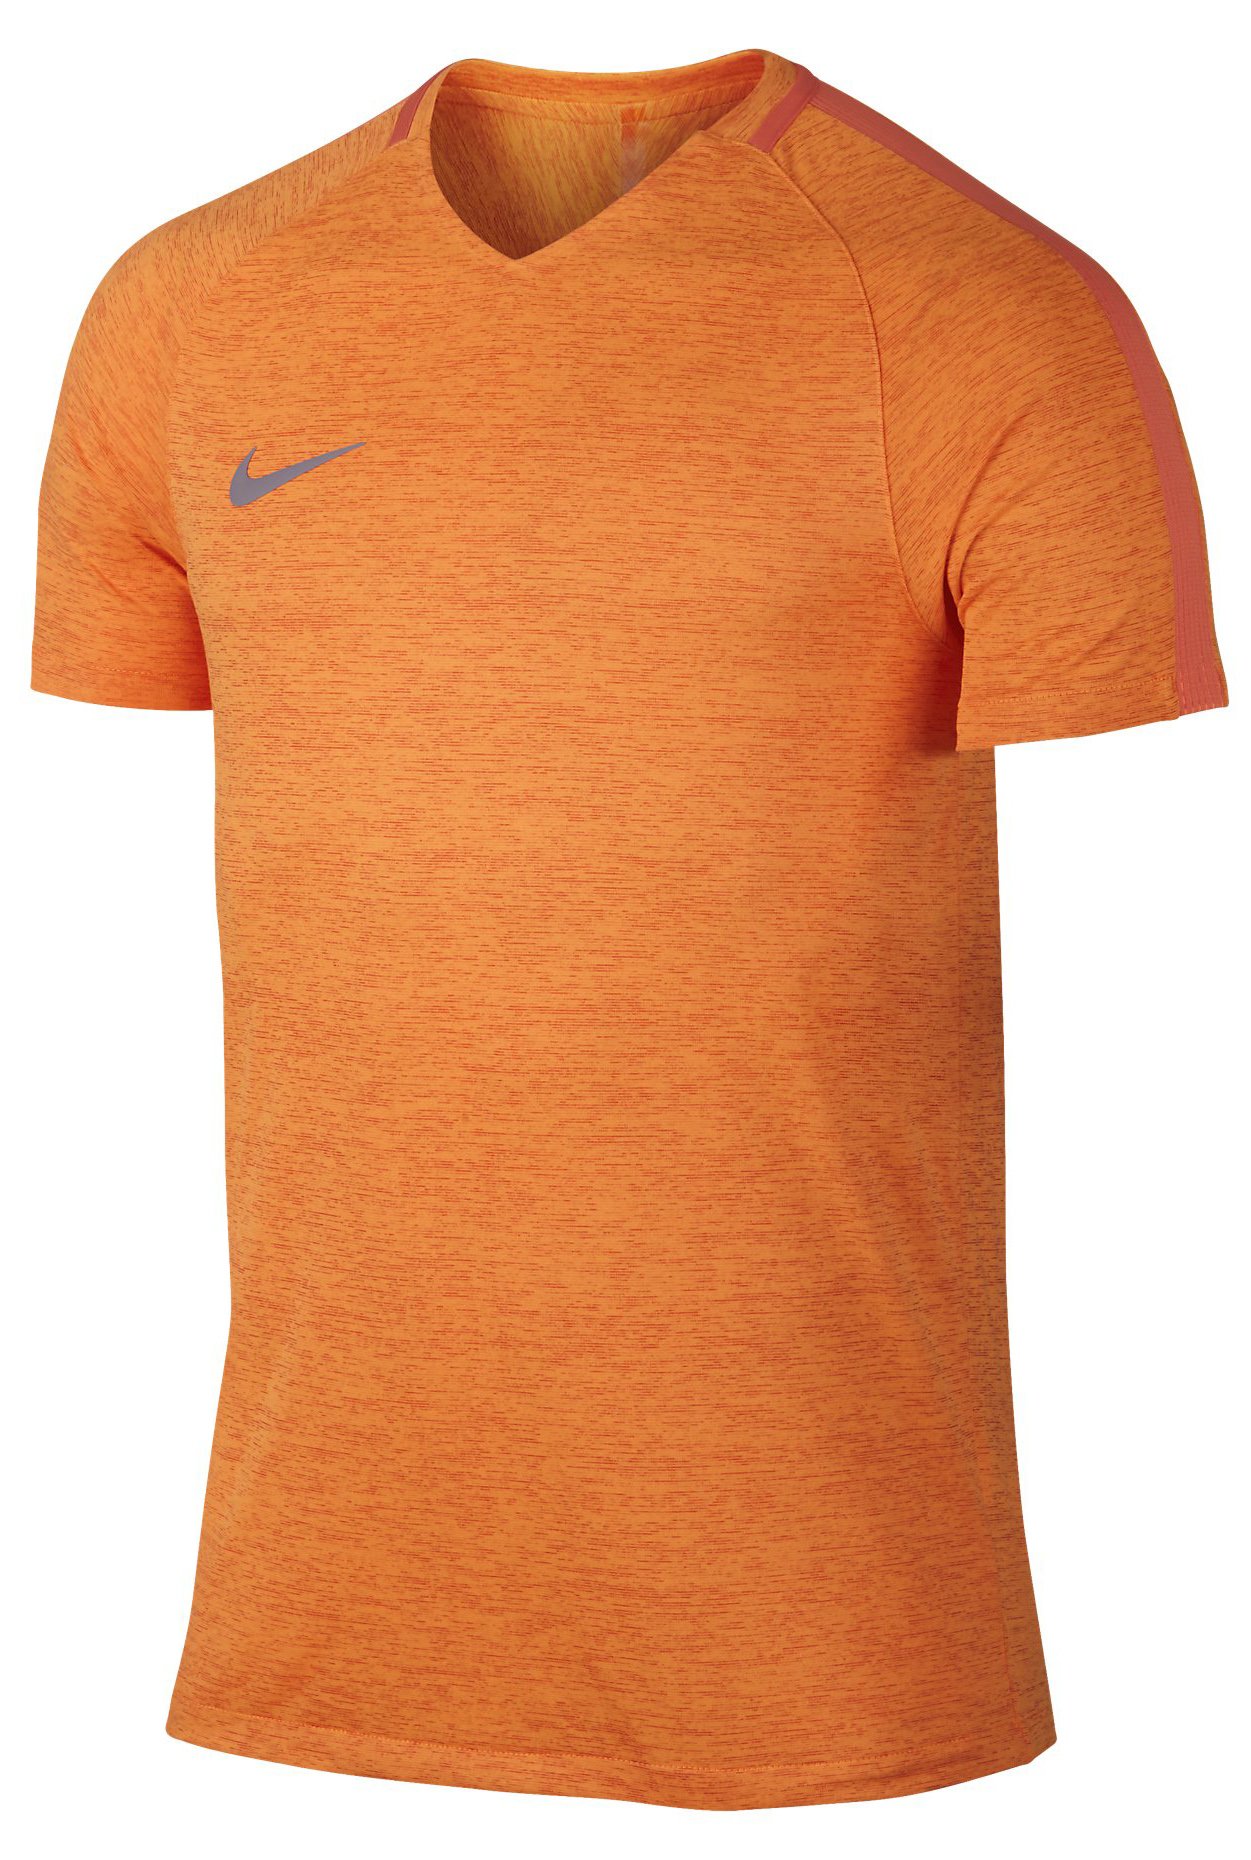 Pánské fotbalové triko Nike Dry Squad